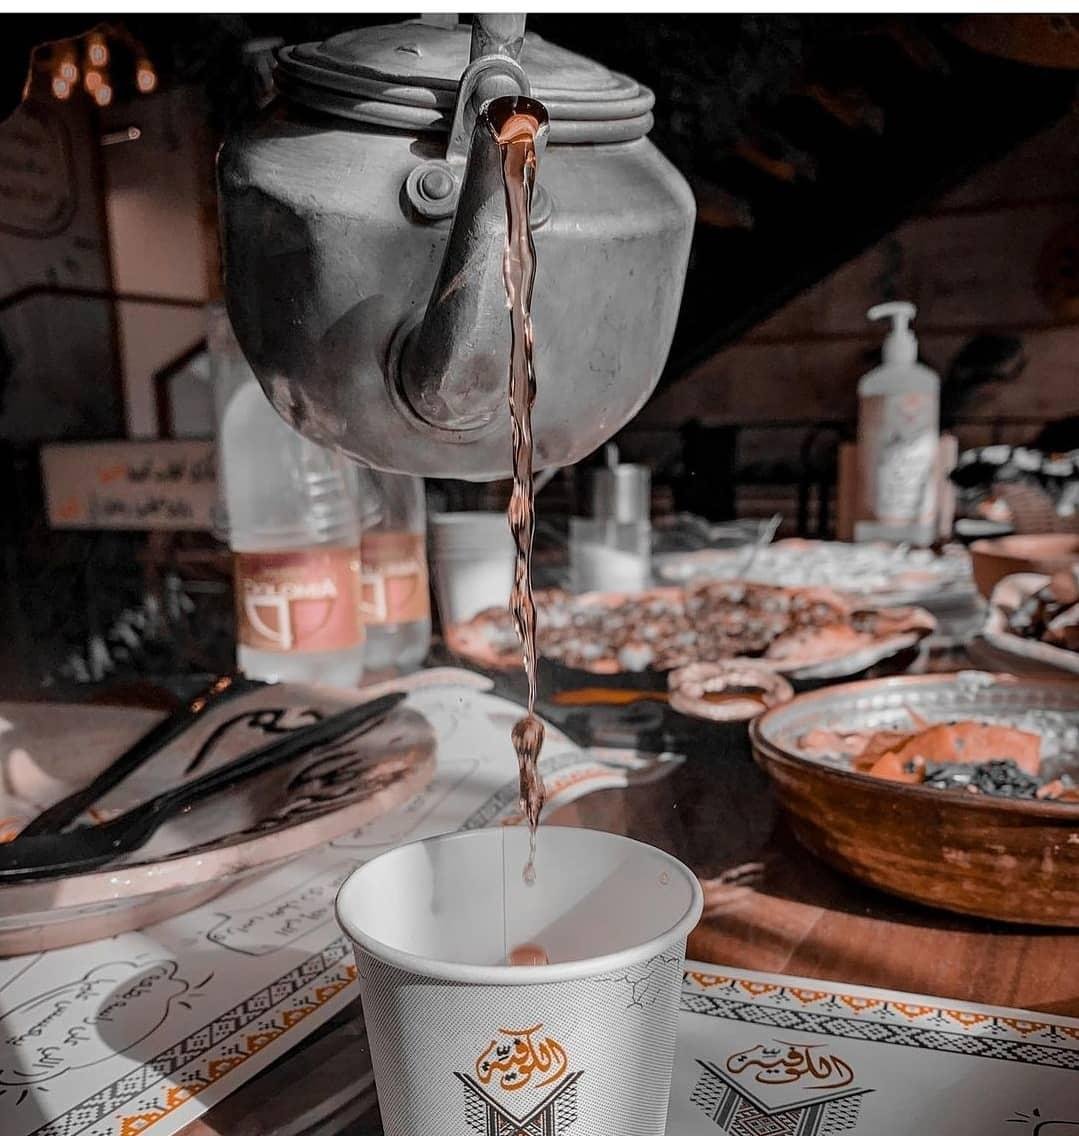 مقاهي    مقهى   شاي    افضل مقاهي الرياض   افضل مقهى في الرياض   الرياض   المملكة العرية السعودية   السعودية